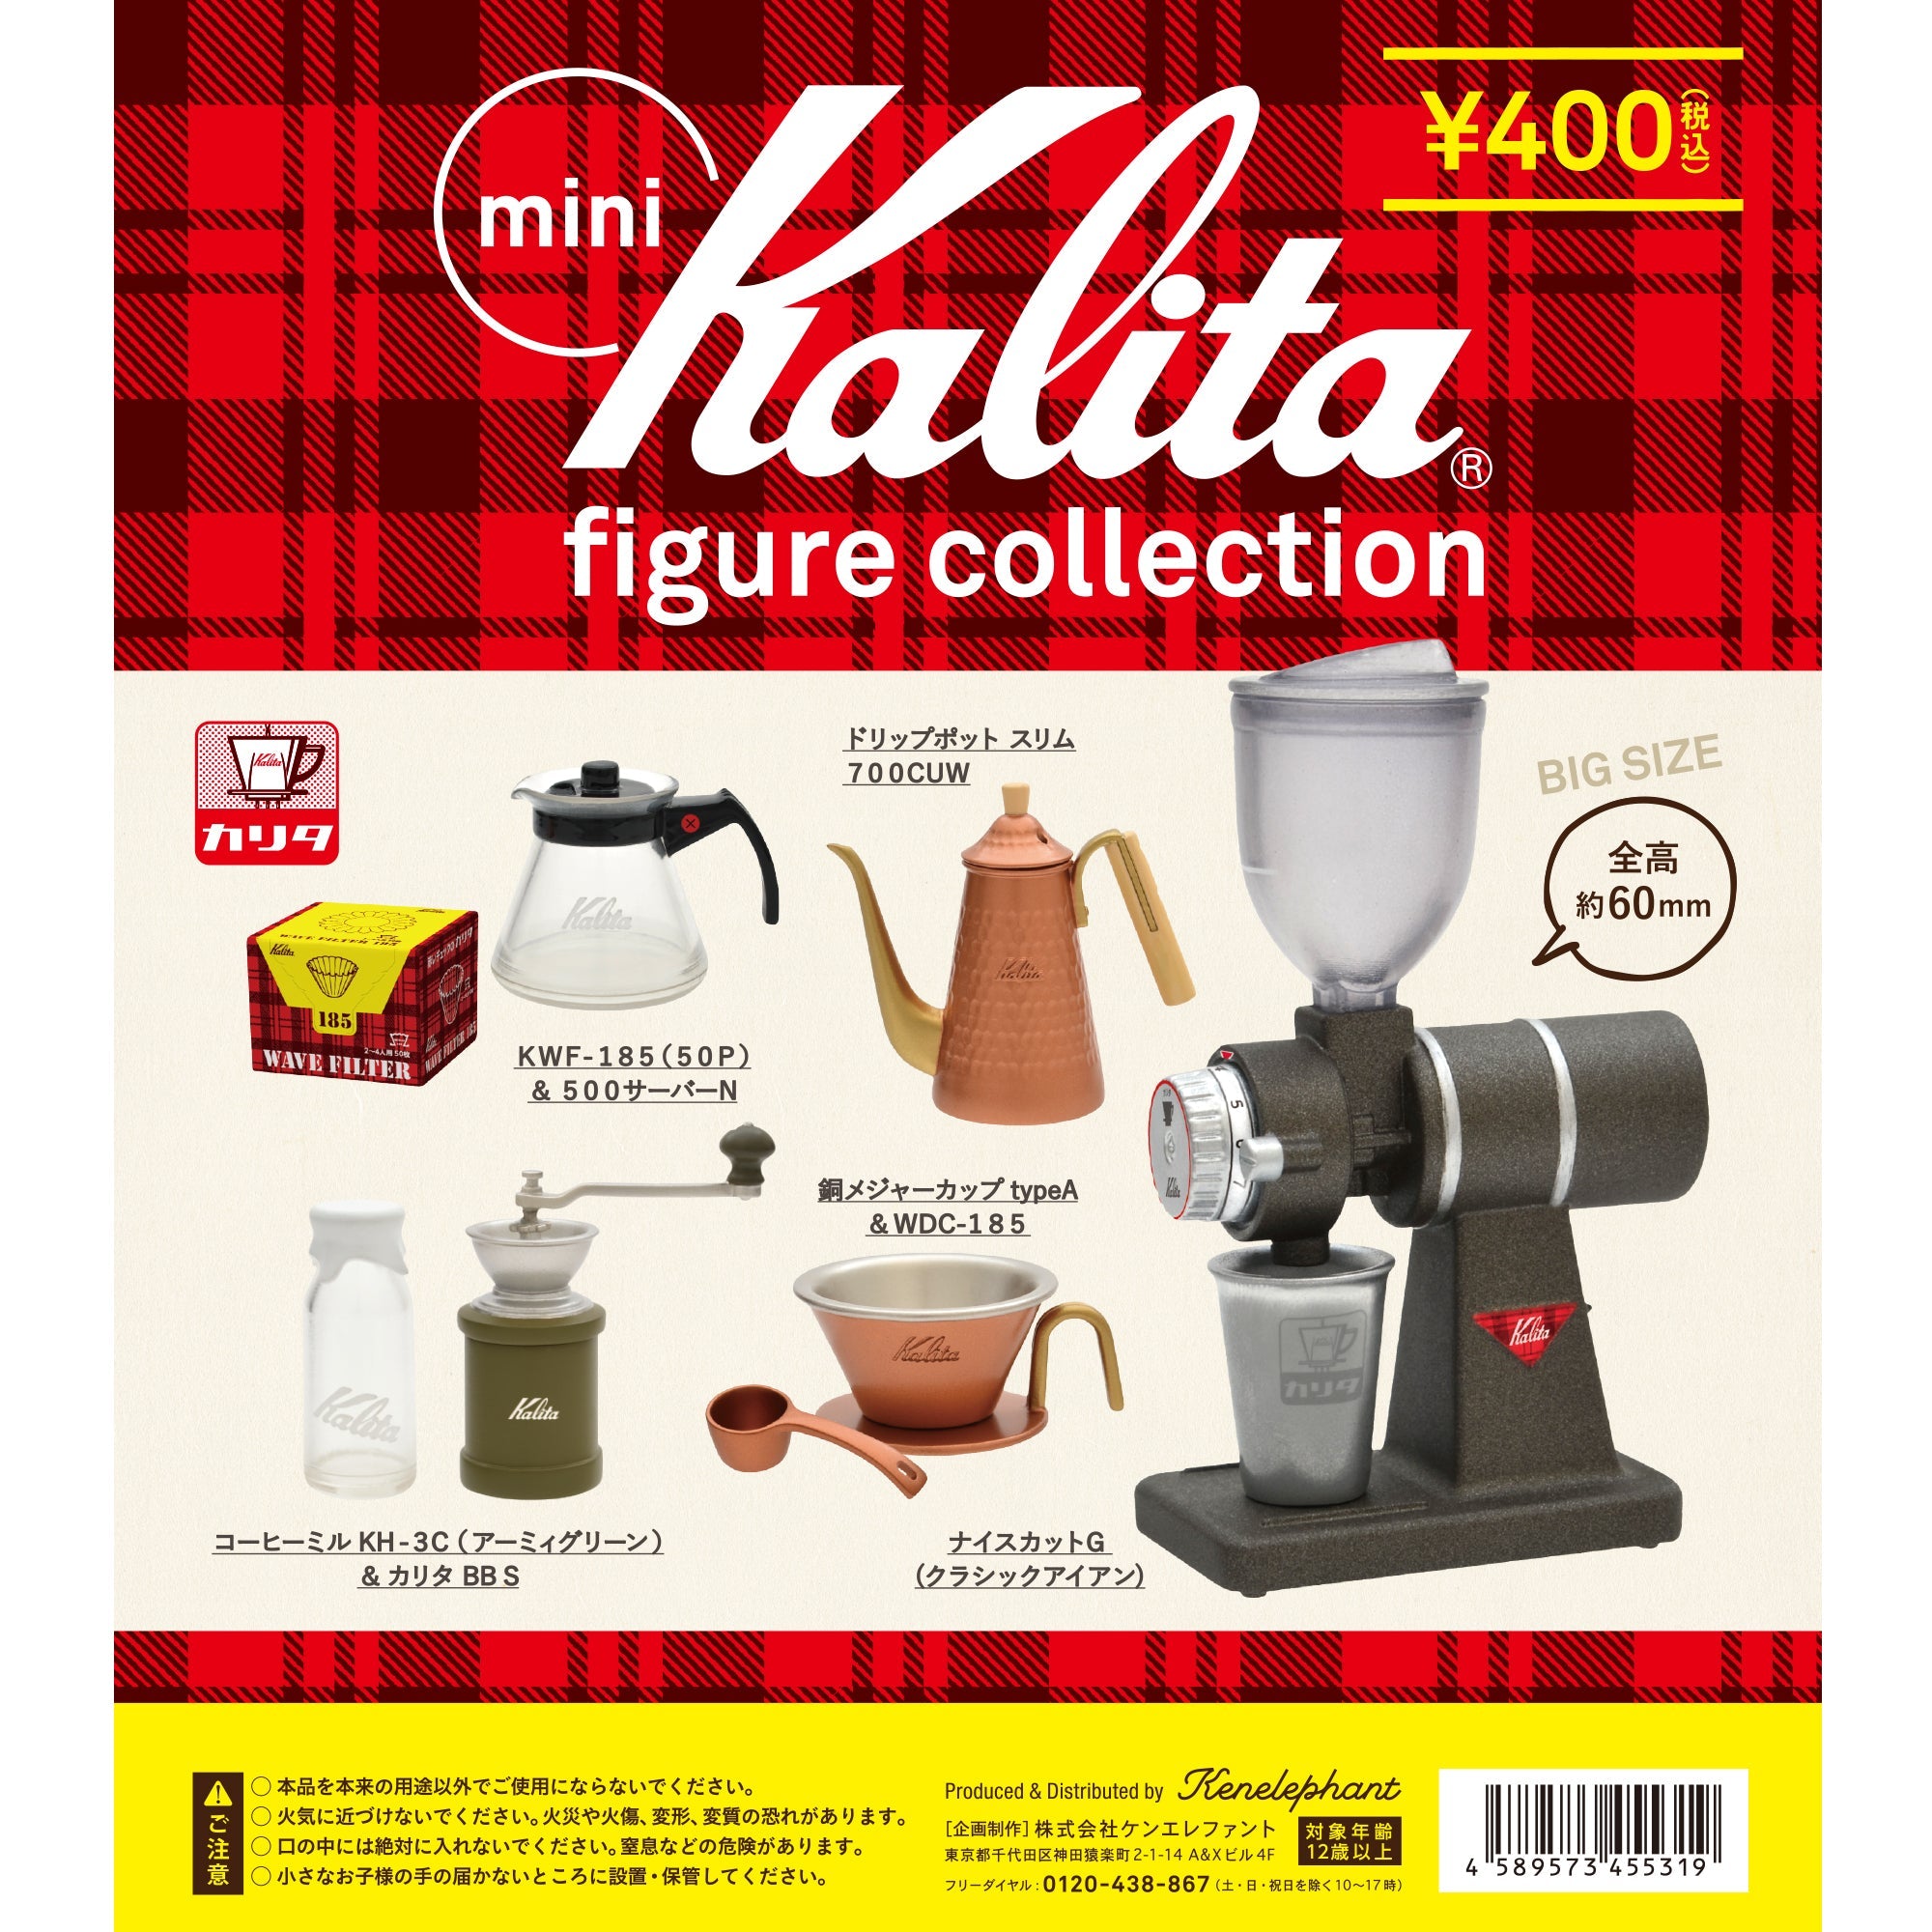 海外で買ケンエレファント ミニ カリタ フィギュア コレクション 1BOX mini Kalita figure collection ミニチュア ドールハウス Miniature Toy その他